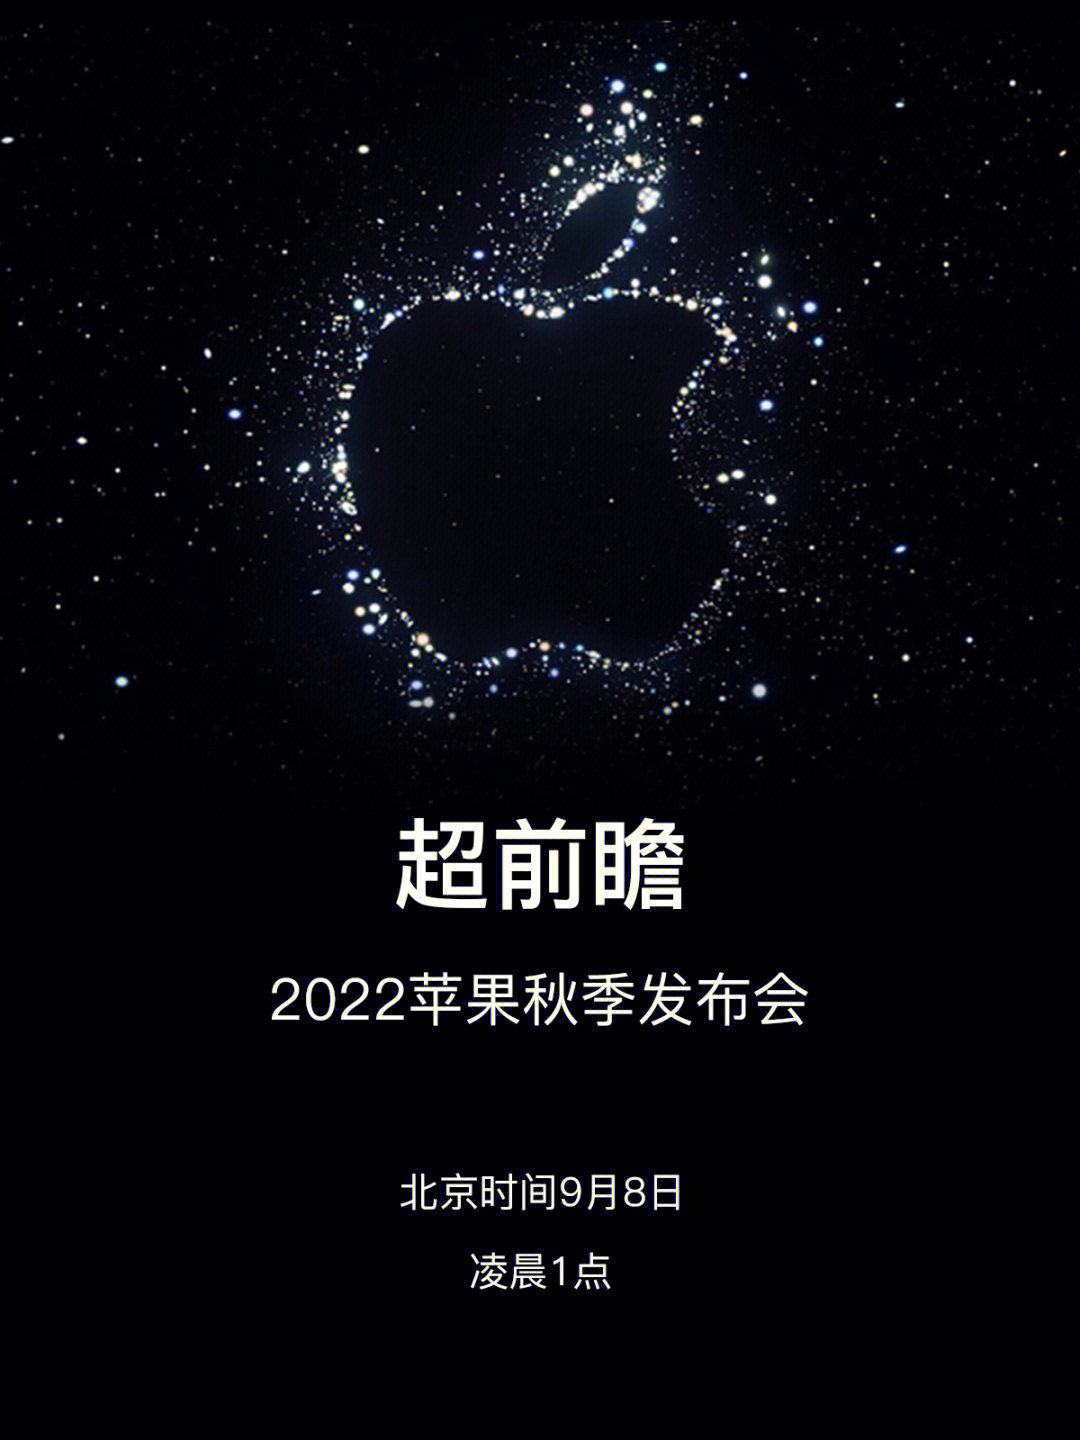 2022苹果秋季发布会超前瞻